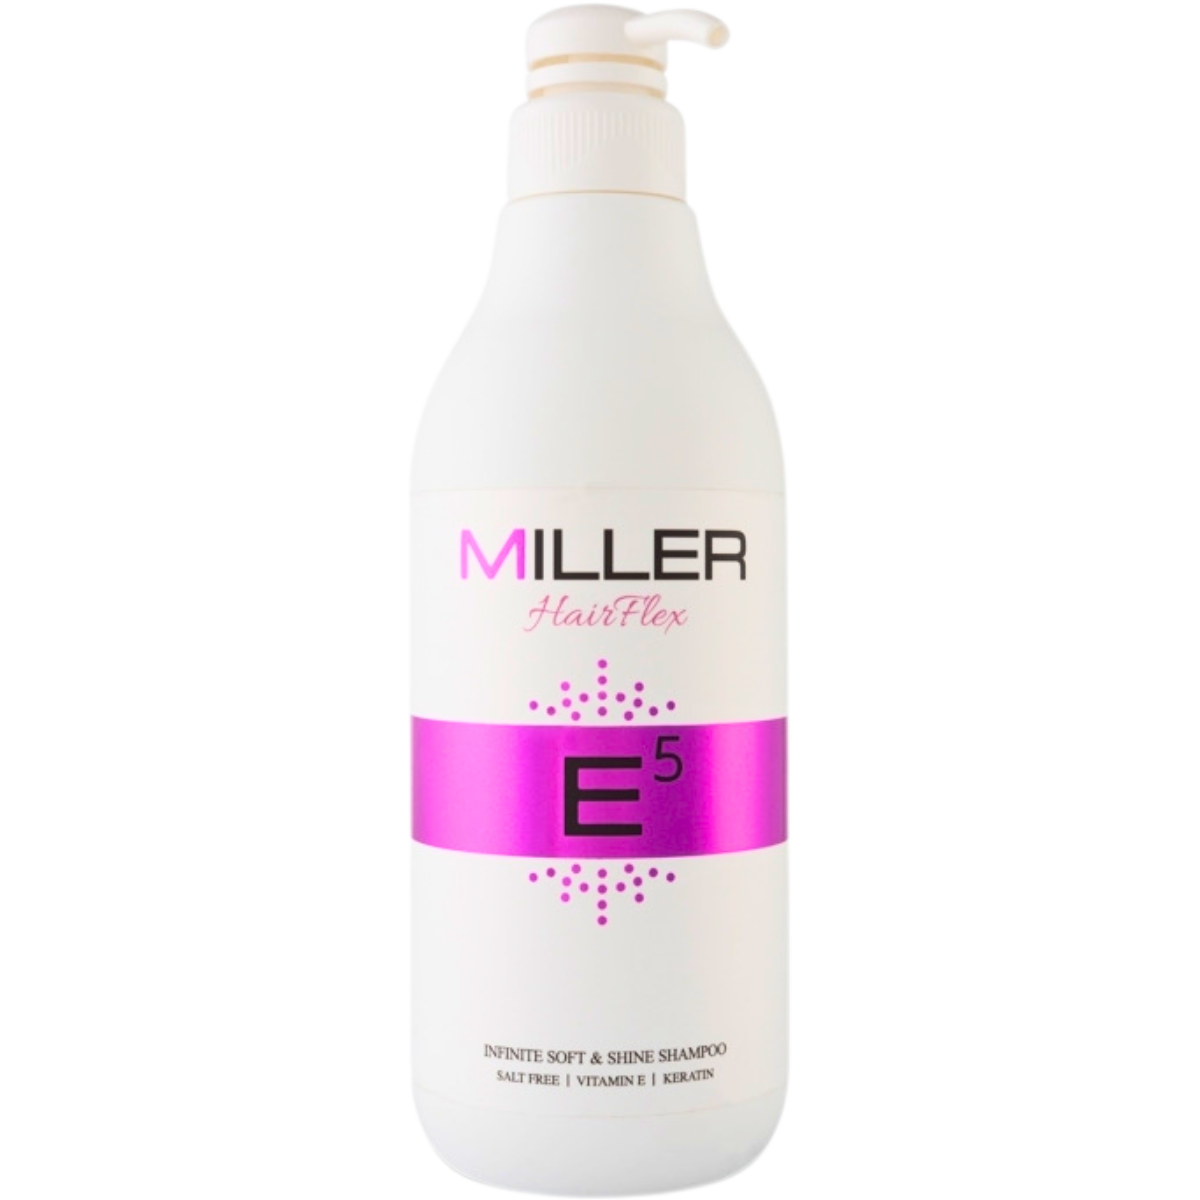 שמפו ללא מלחים MILLER E5 לשיער יבש מסדרת היירפלקס מילר 1000 מ"ל